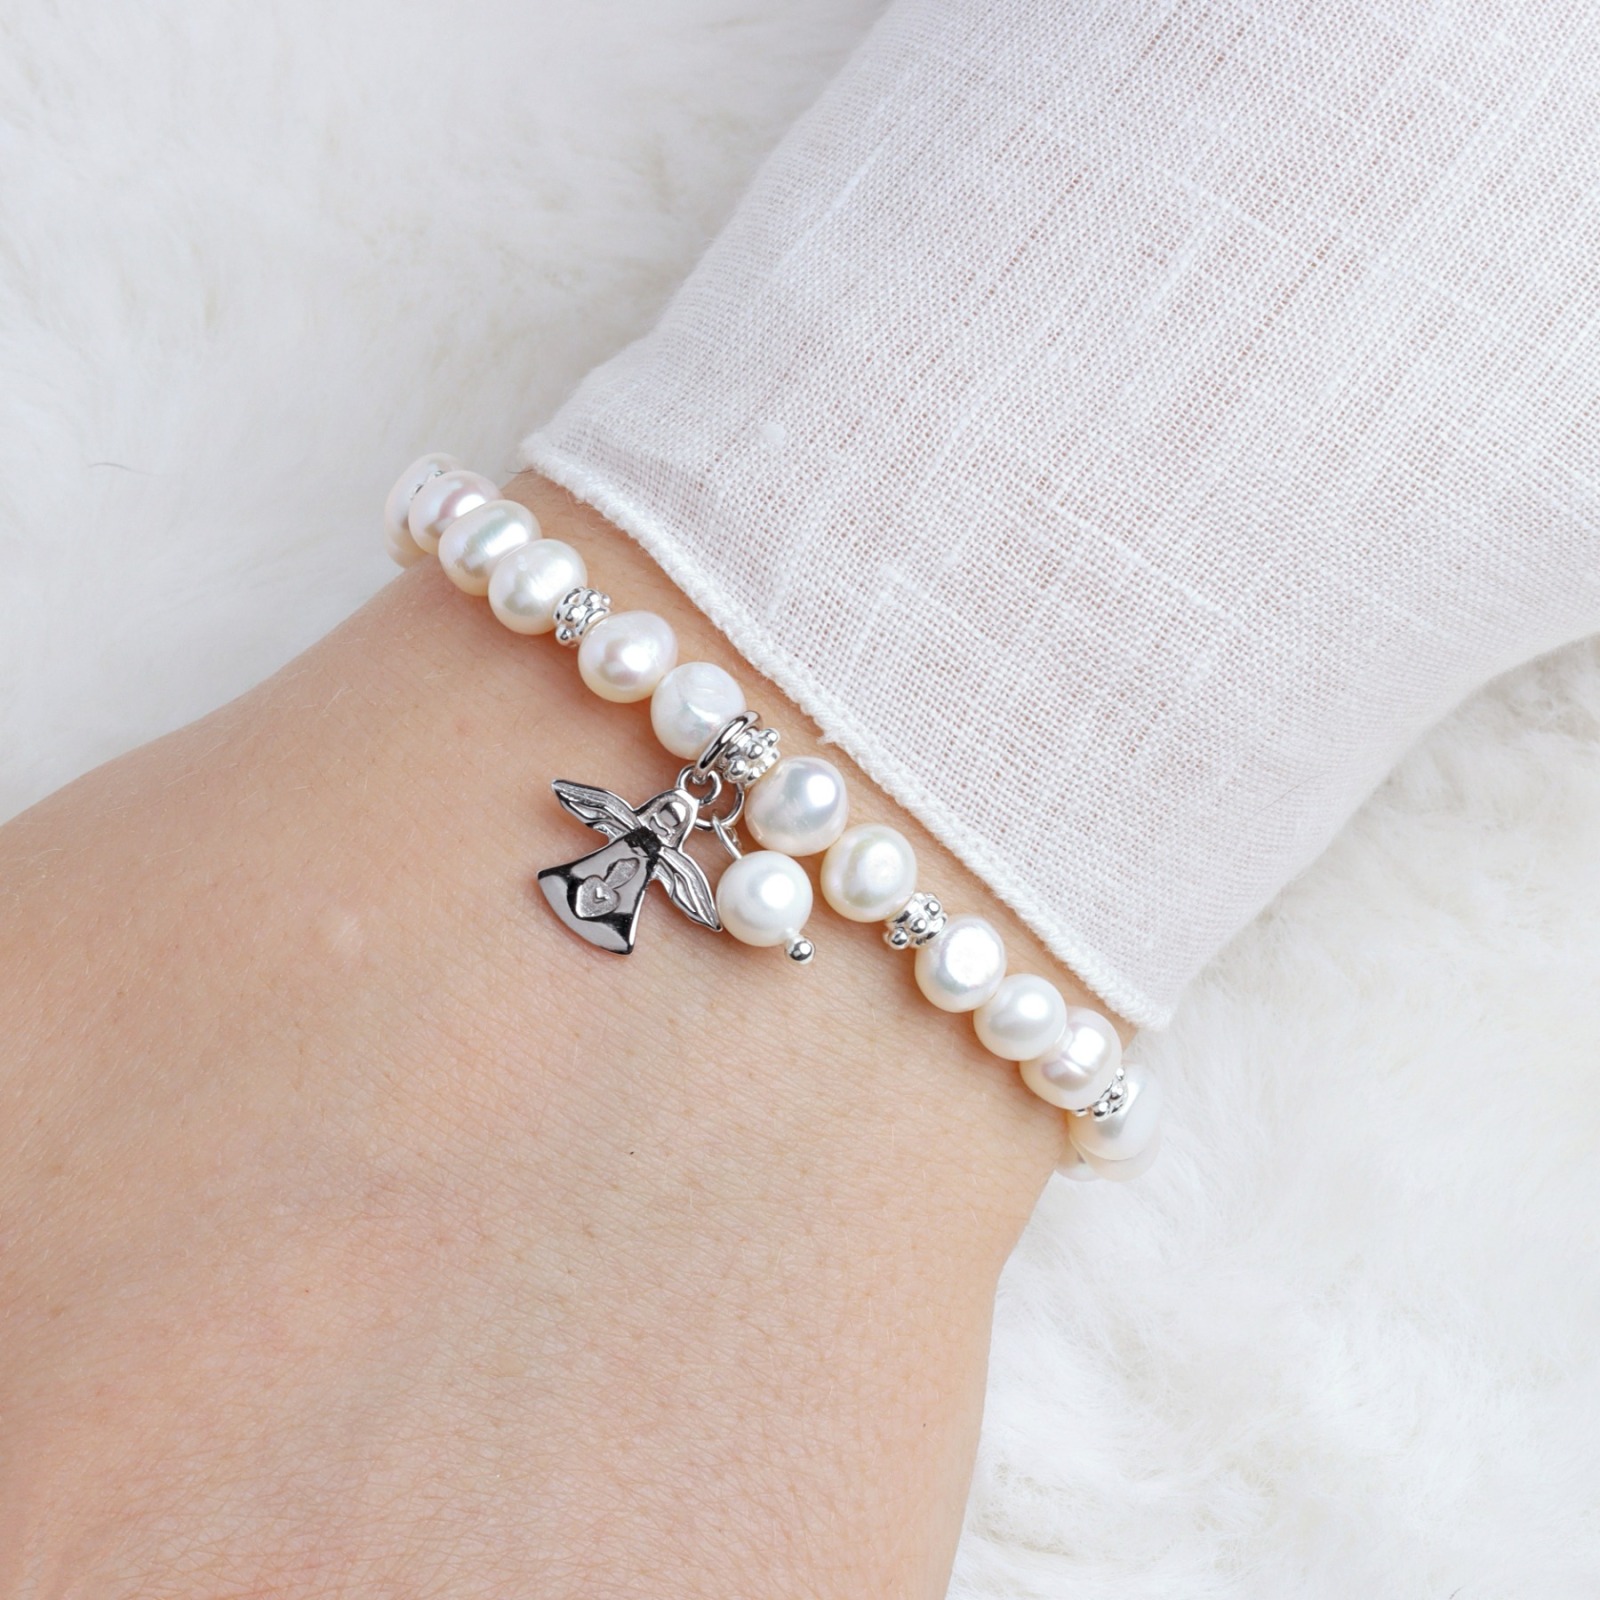 Armband aus echten Perlen mit Schutzengel Silber Geschenk zu Weihnachten elastisch 2